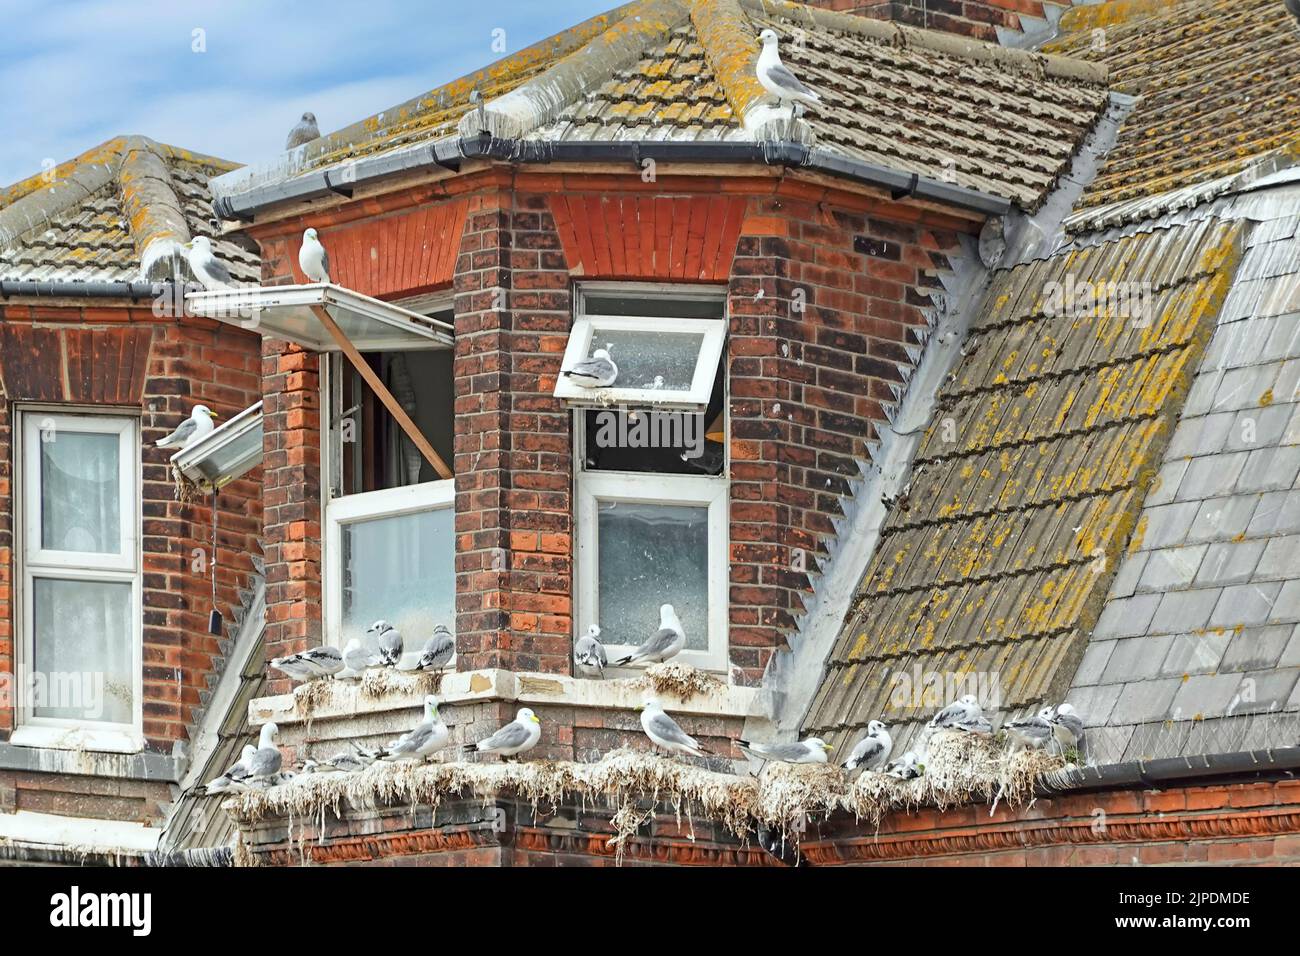 Nahaufnahme eines vernachlässigten, deckenhoch gelegenen Erker-Küstengrundstücks, das durch Möwen auf Dachrinnen und Fensterbeinen verseucht ist Lowestoft Suffolk England Großbritannien Stockfoto